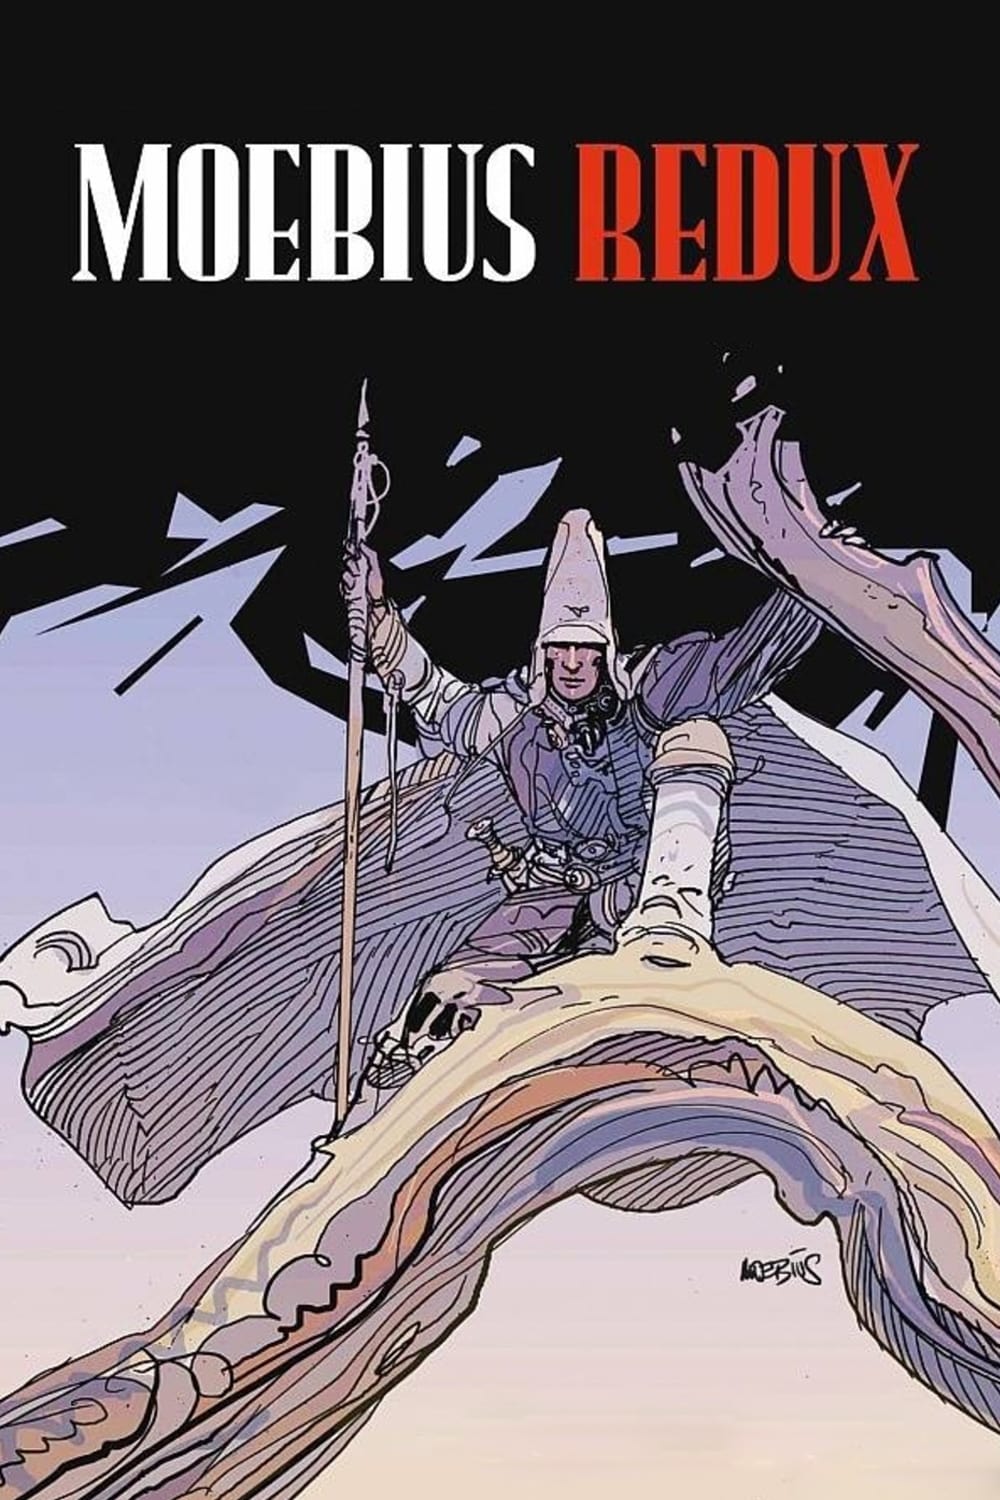 Moebius Redux: A Life in Pictures film